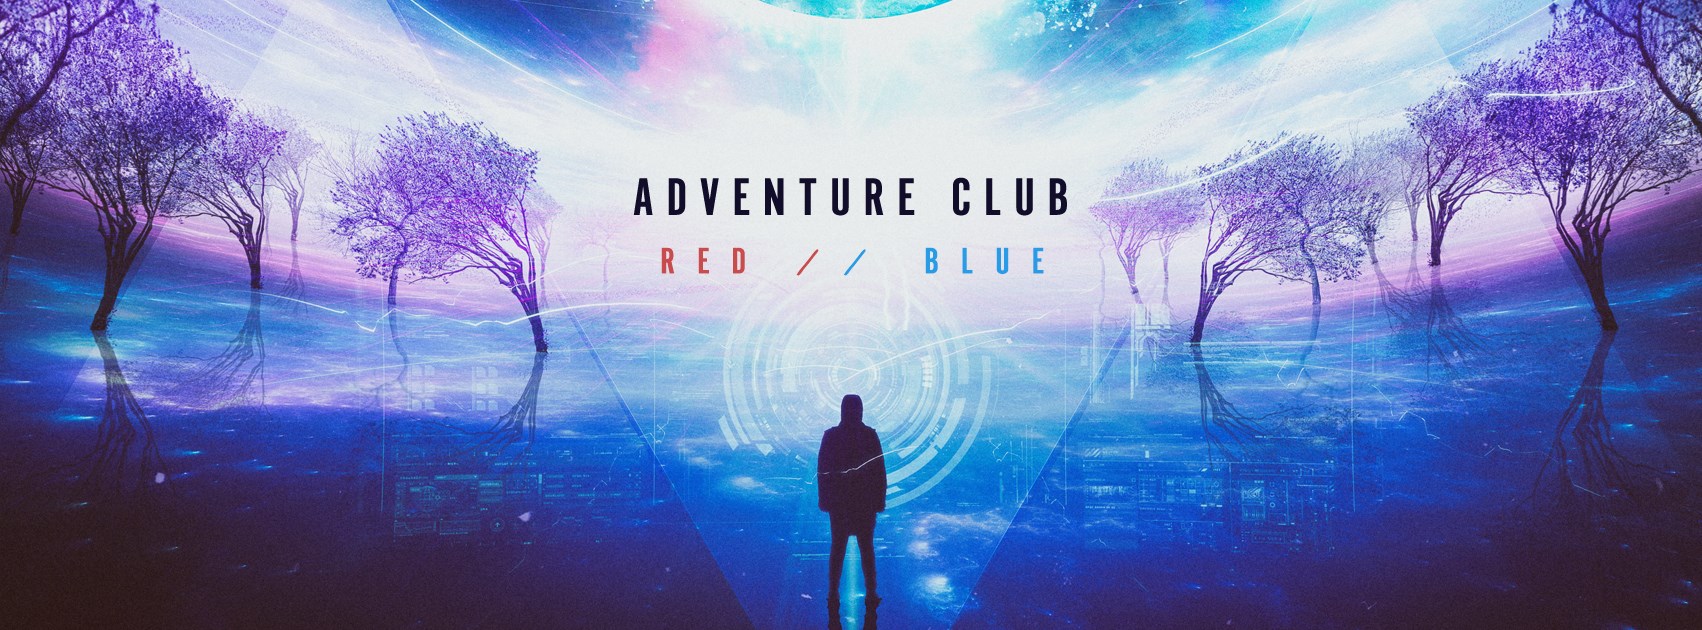 Adventure Club Red // Blue Album